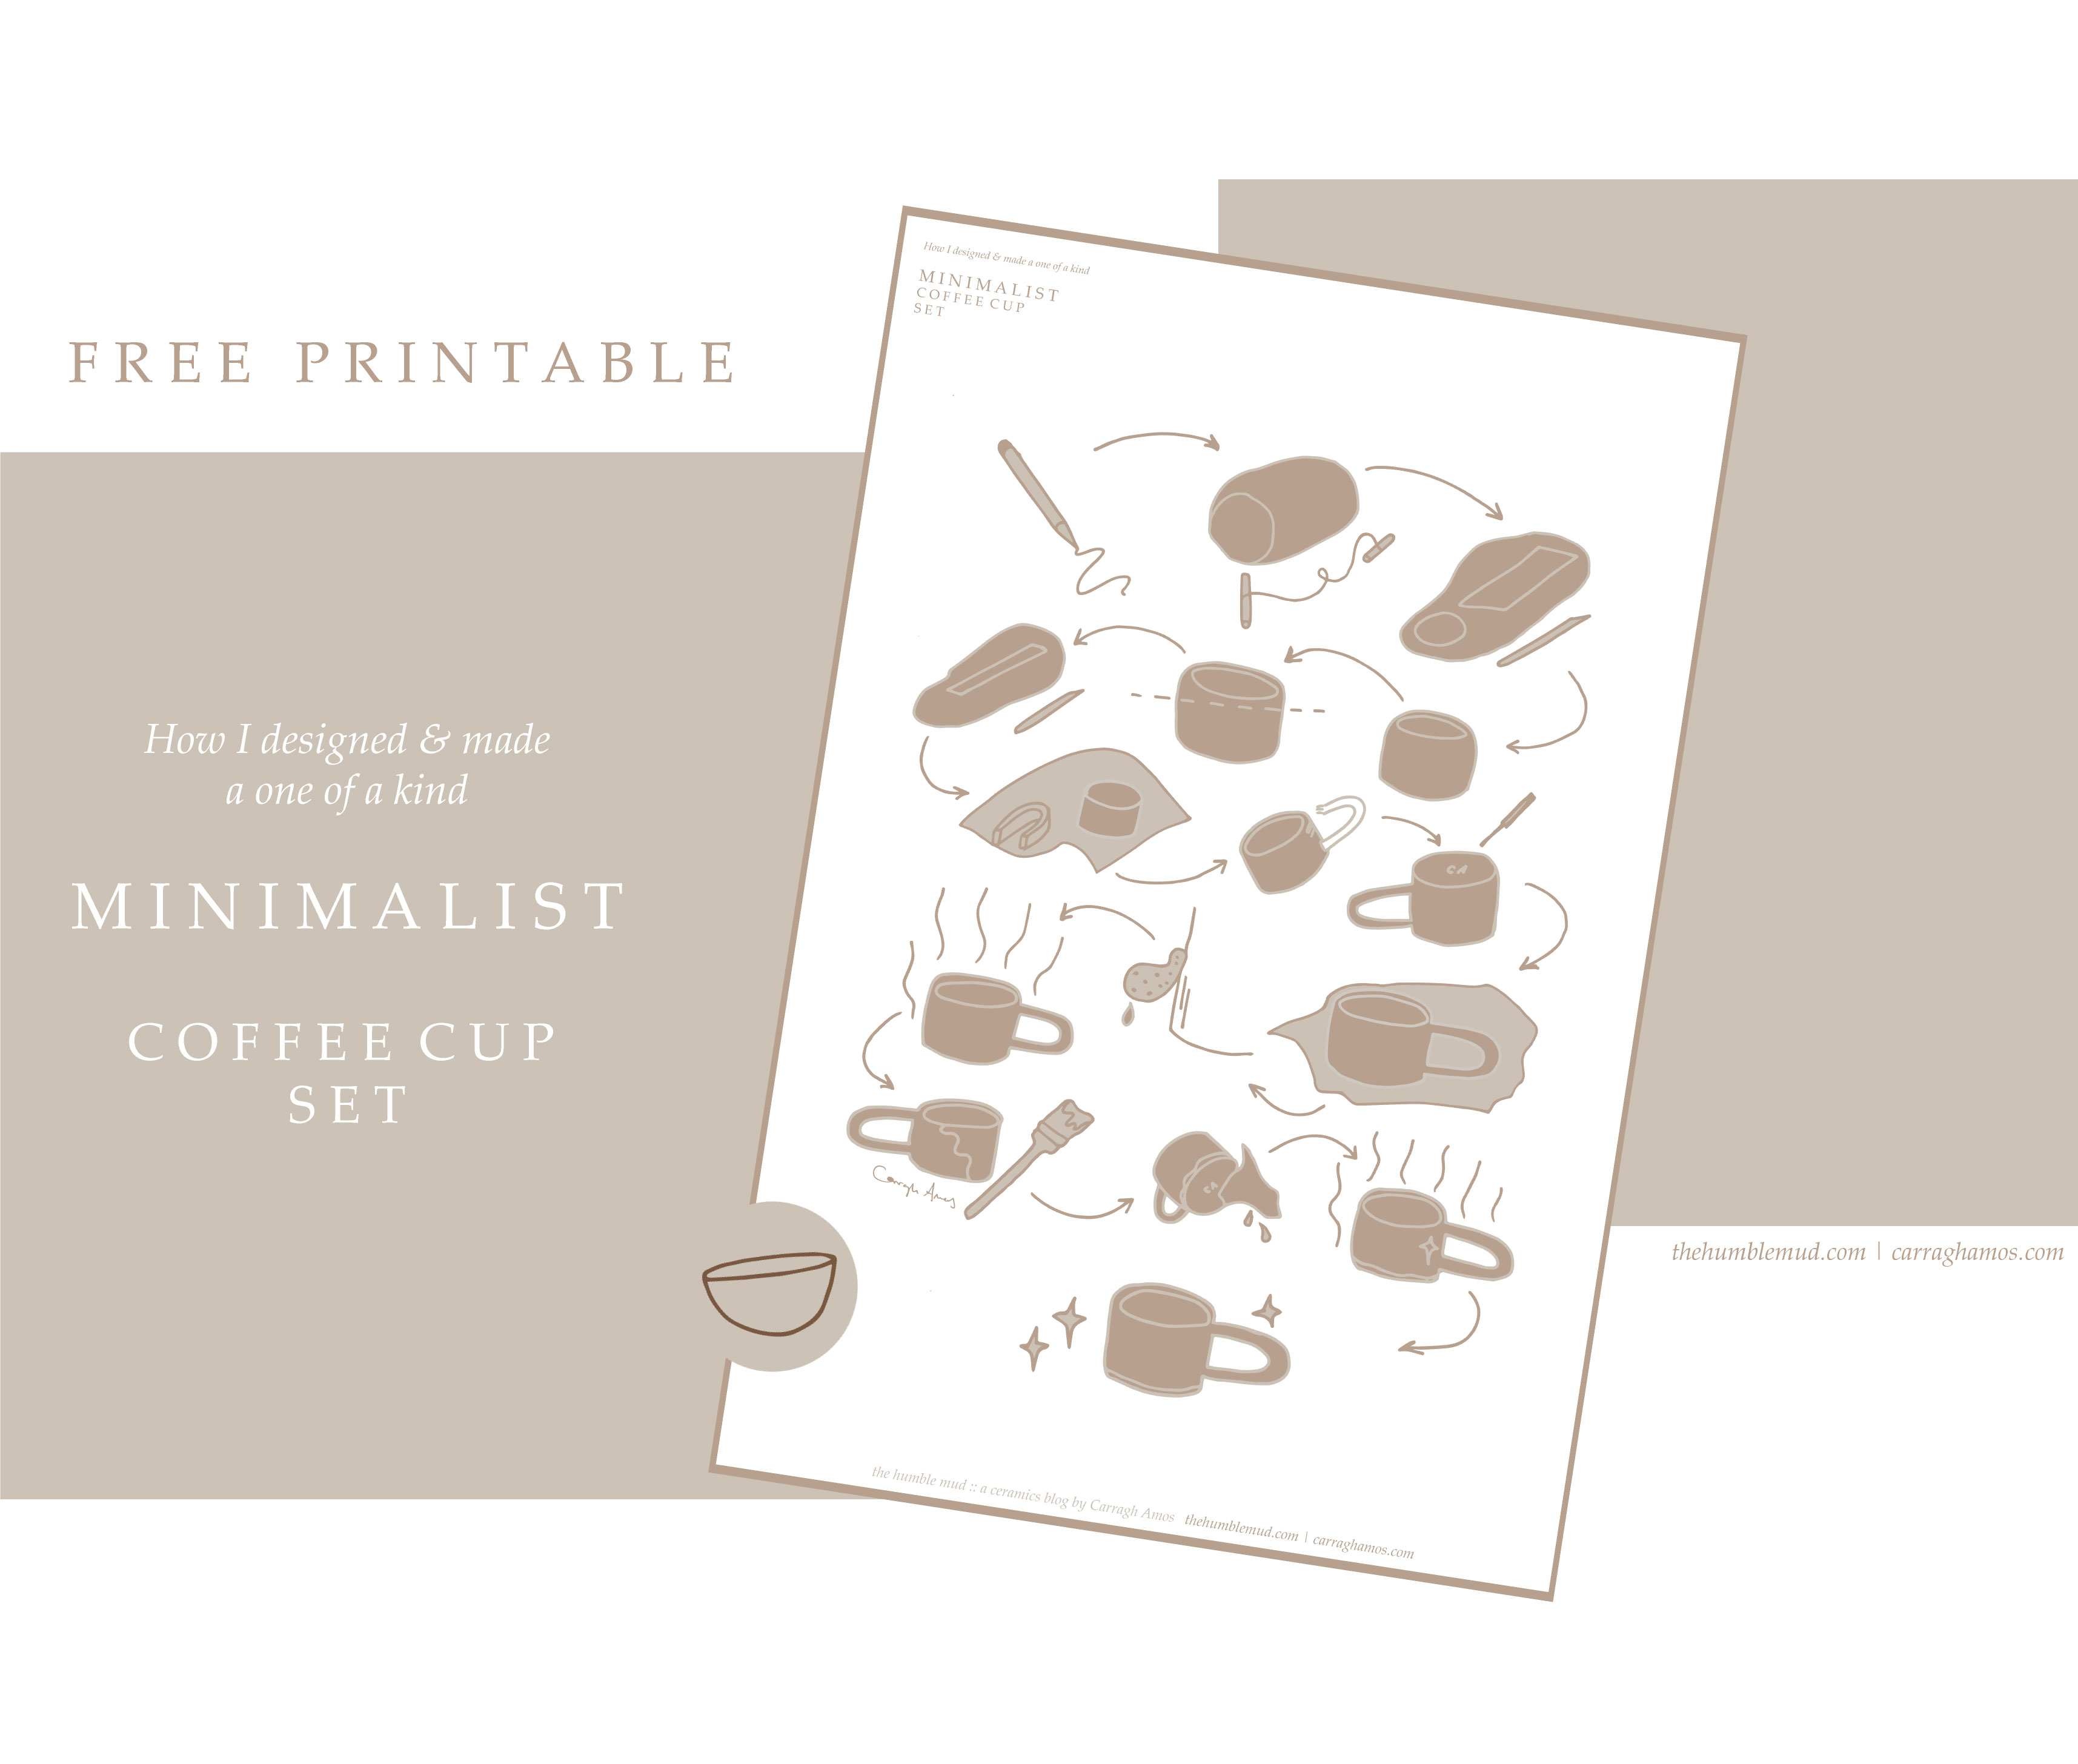 Kostenlos druckbar: Wie man einen handgefertigten Slab Built Becher kostenlos druckbar macht. Illustrierte minimalistische Kaffeetasse Set Anleitung.